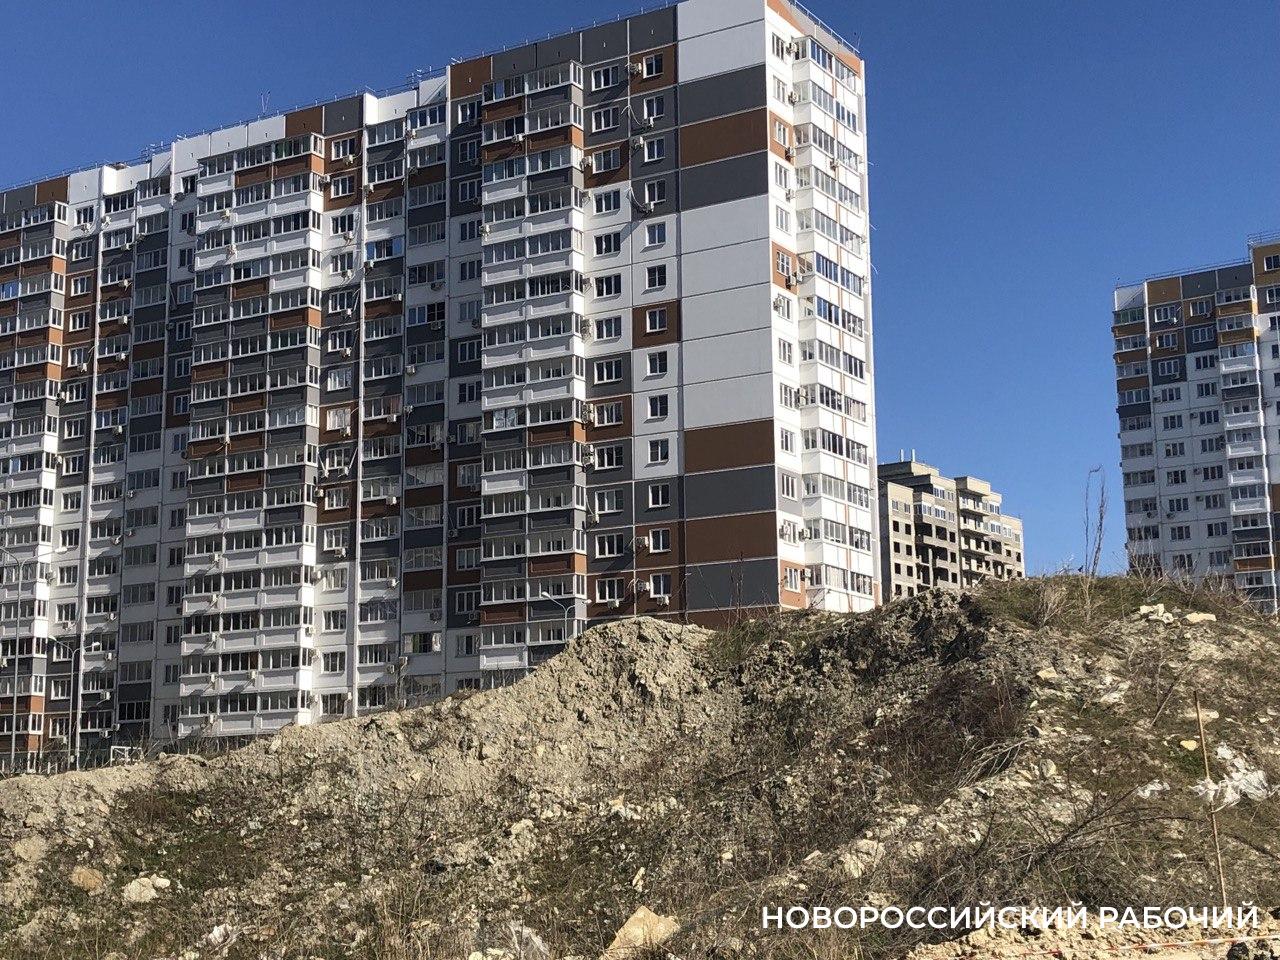 В Новороссийске утвердили проект планировки очередного района многоэтажек